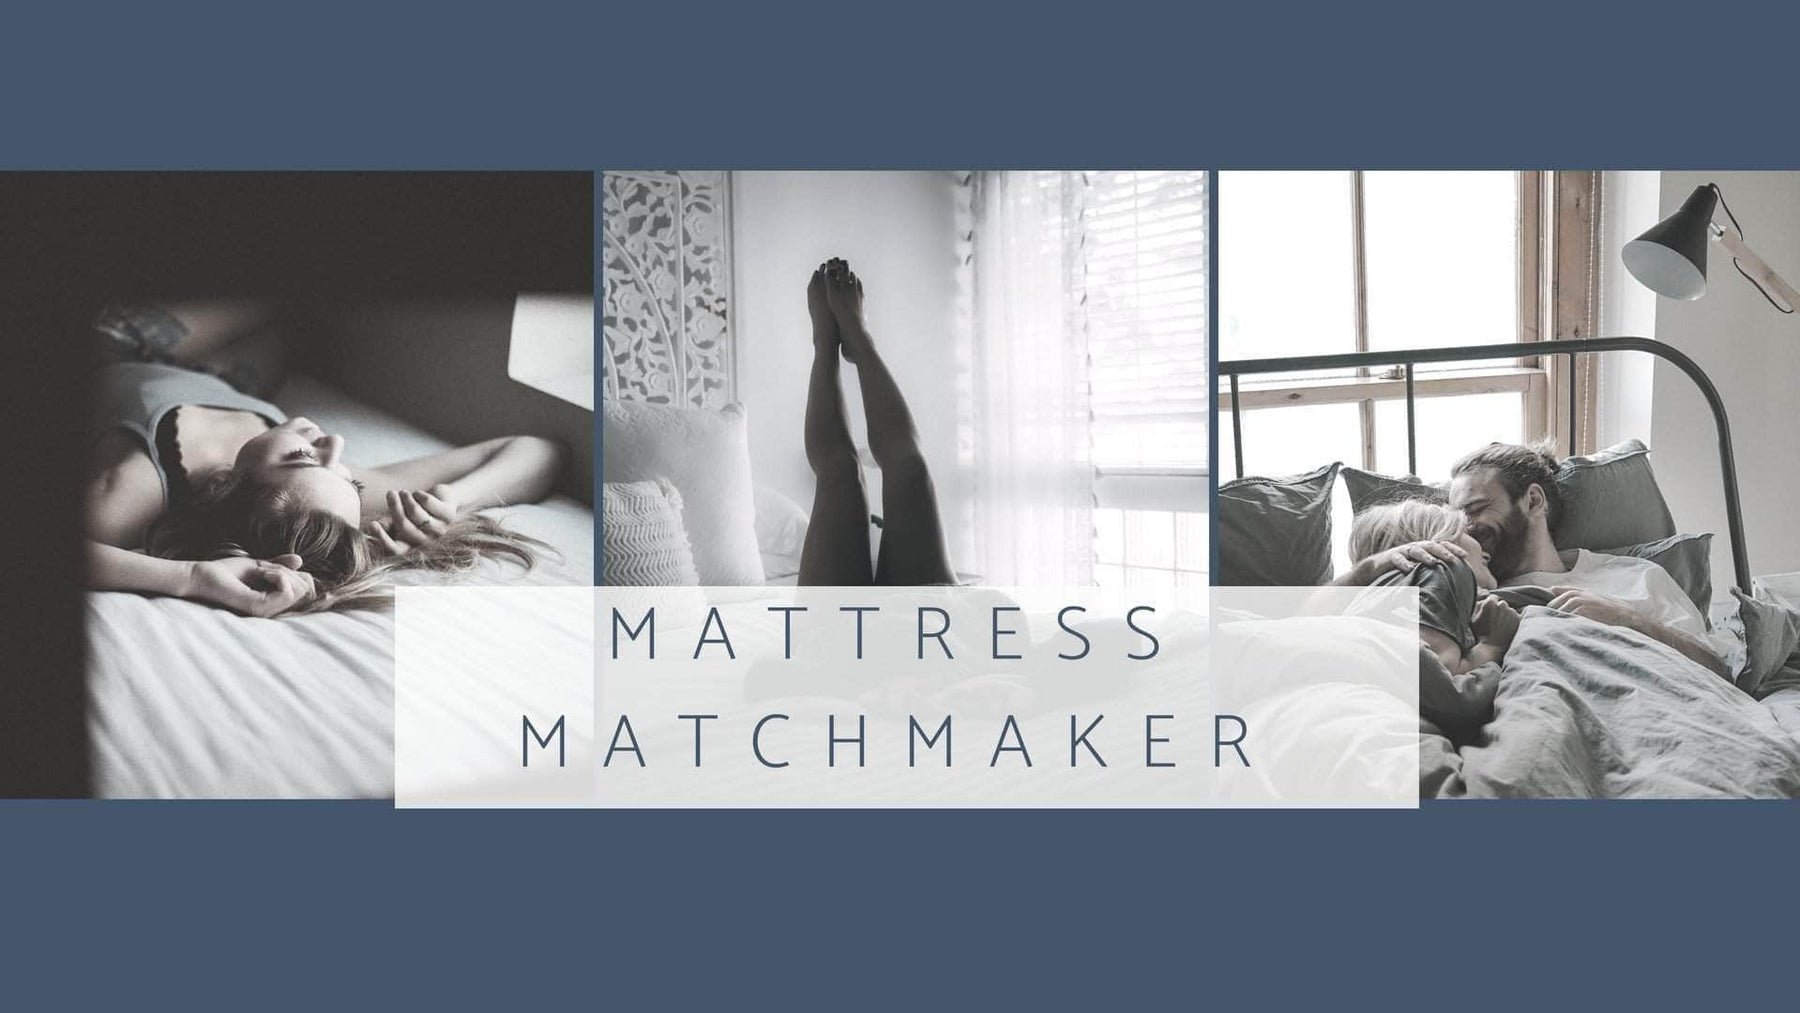 Mattress Matchmaker